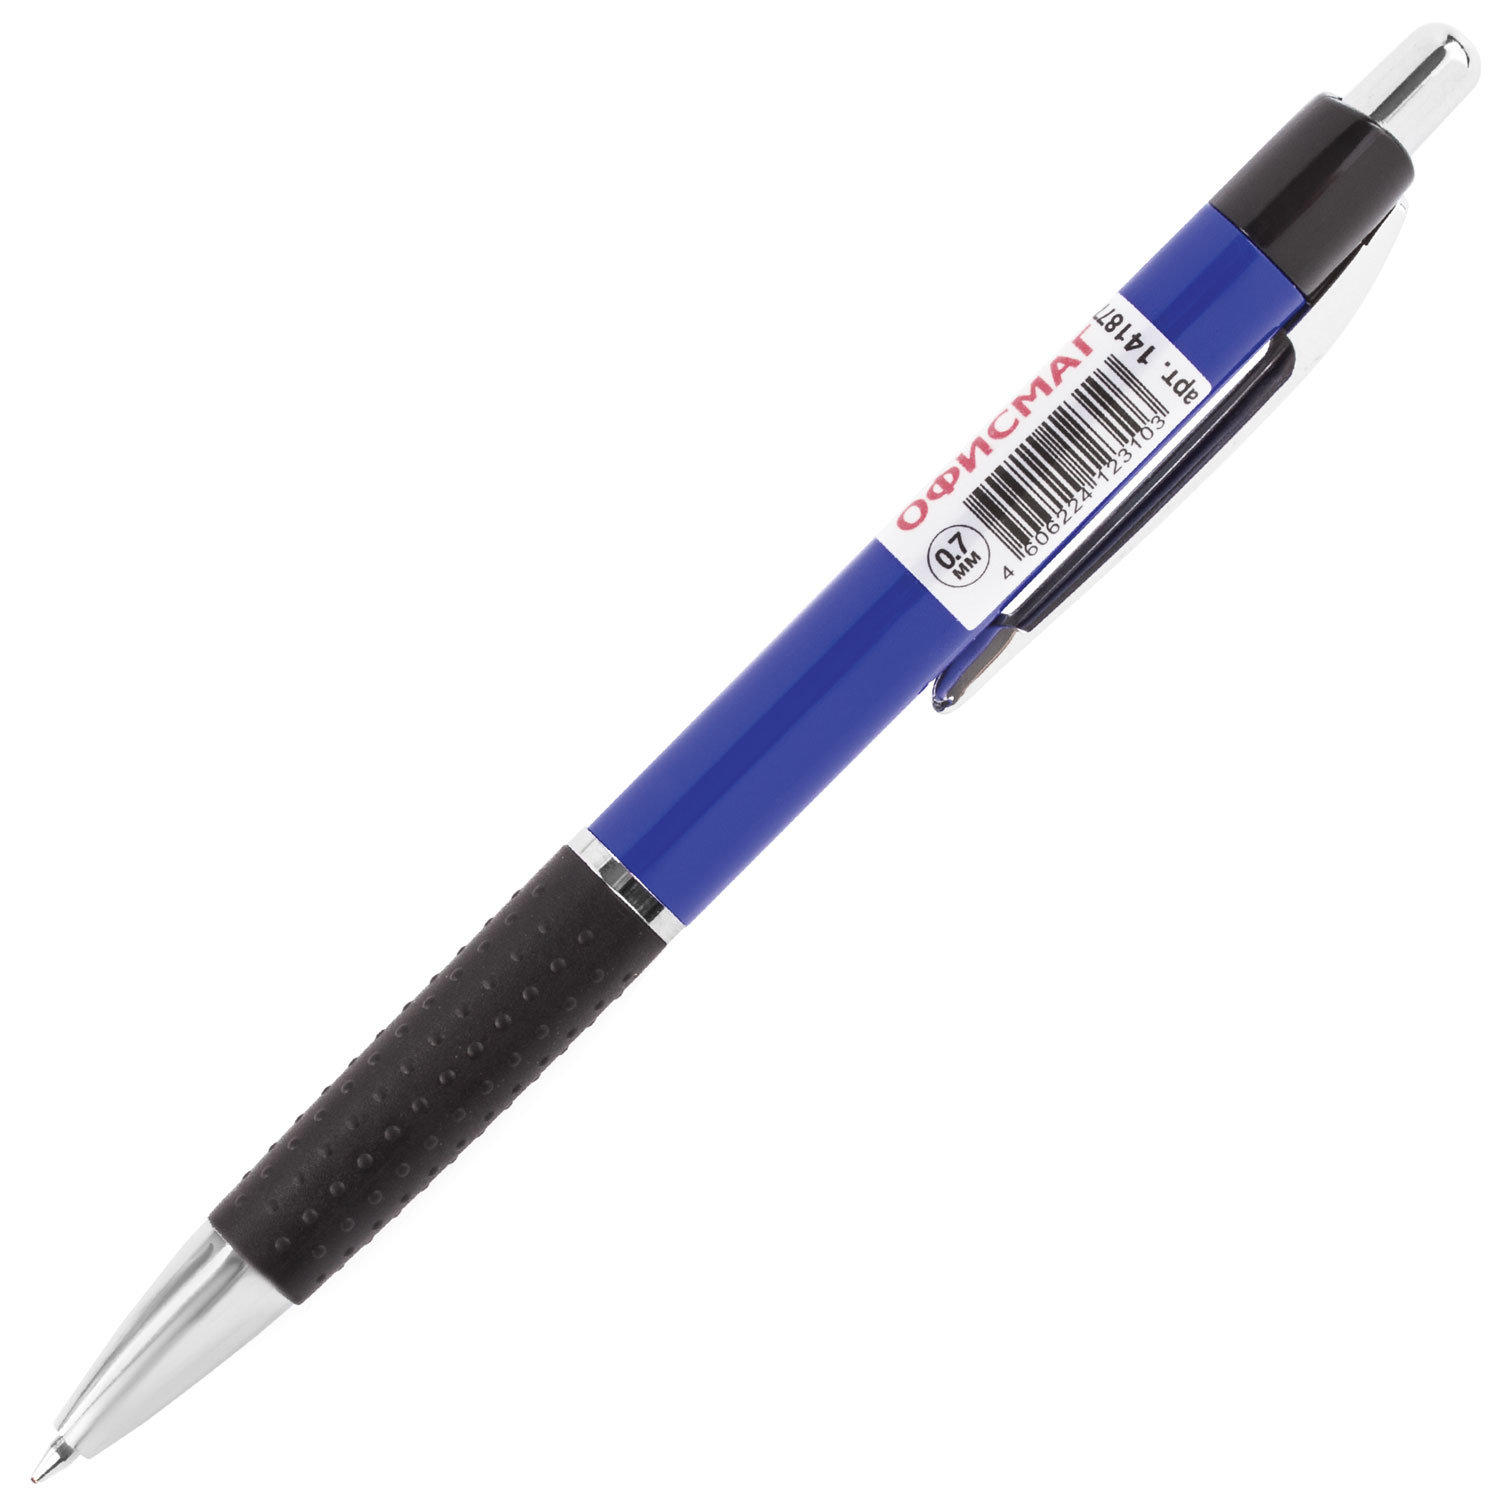 Ручка шариковая ОФИСМАГ автомат. RBP043, хром. детали, 0,7мм, рез. держ. 141877, синяя